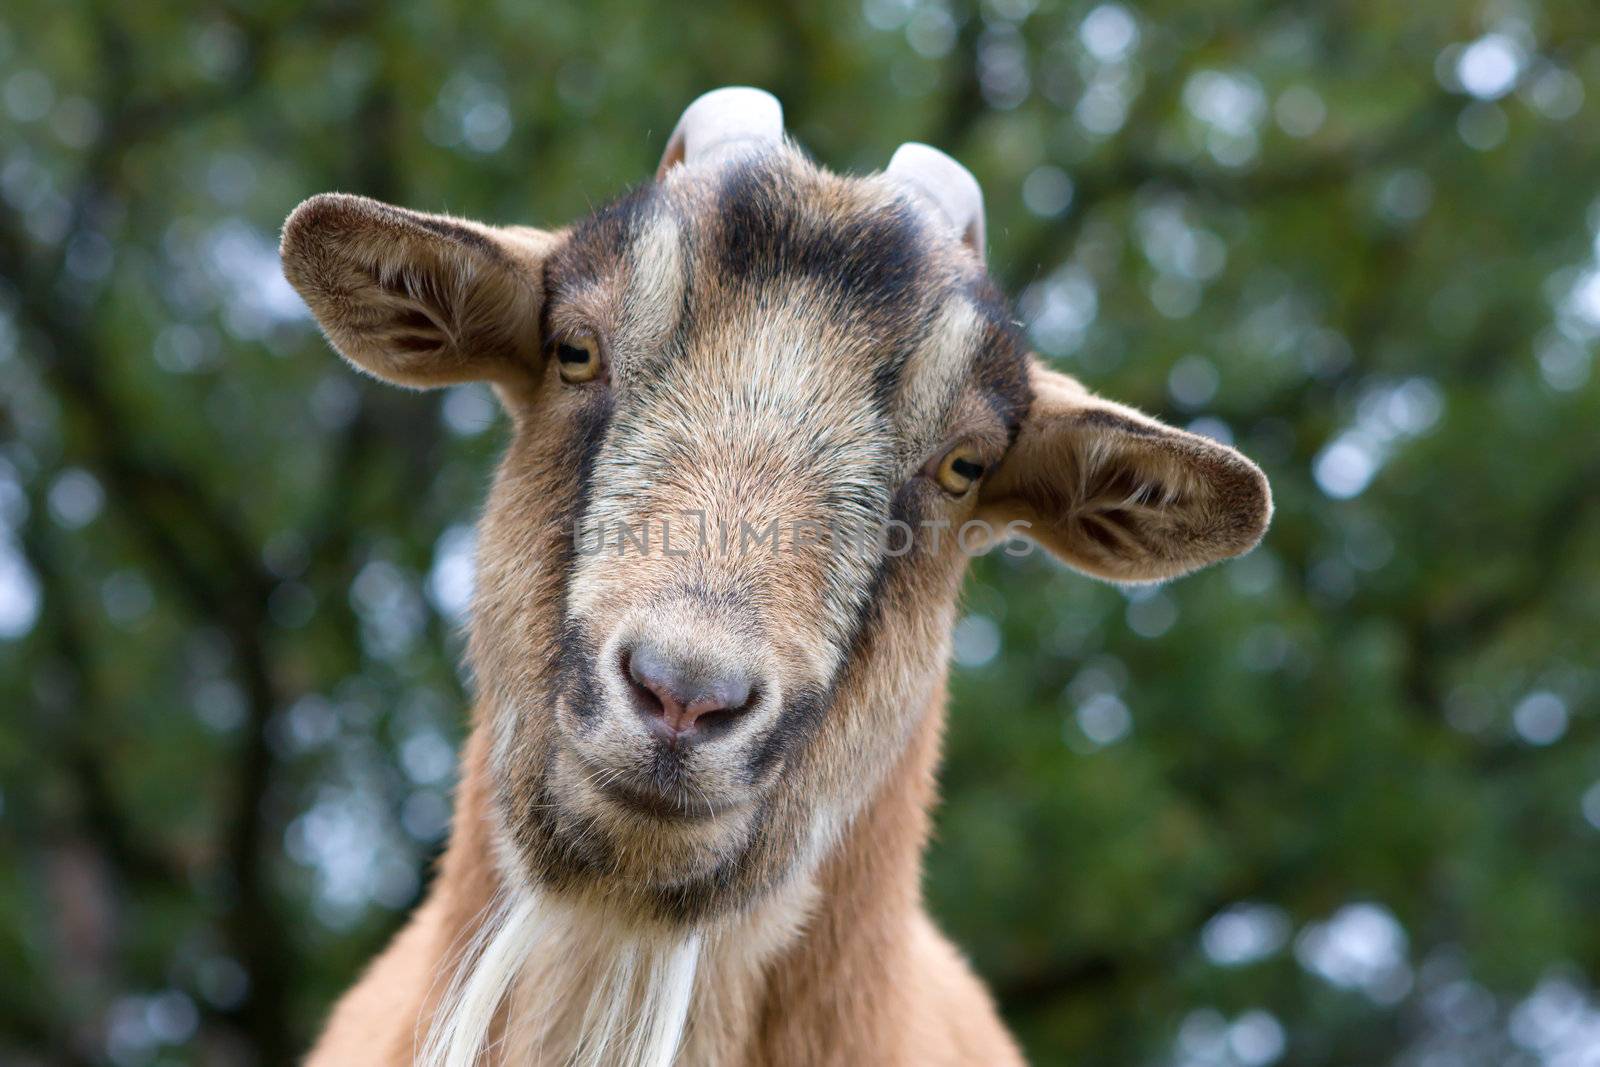 Billy Goat Portrait by Coffee999